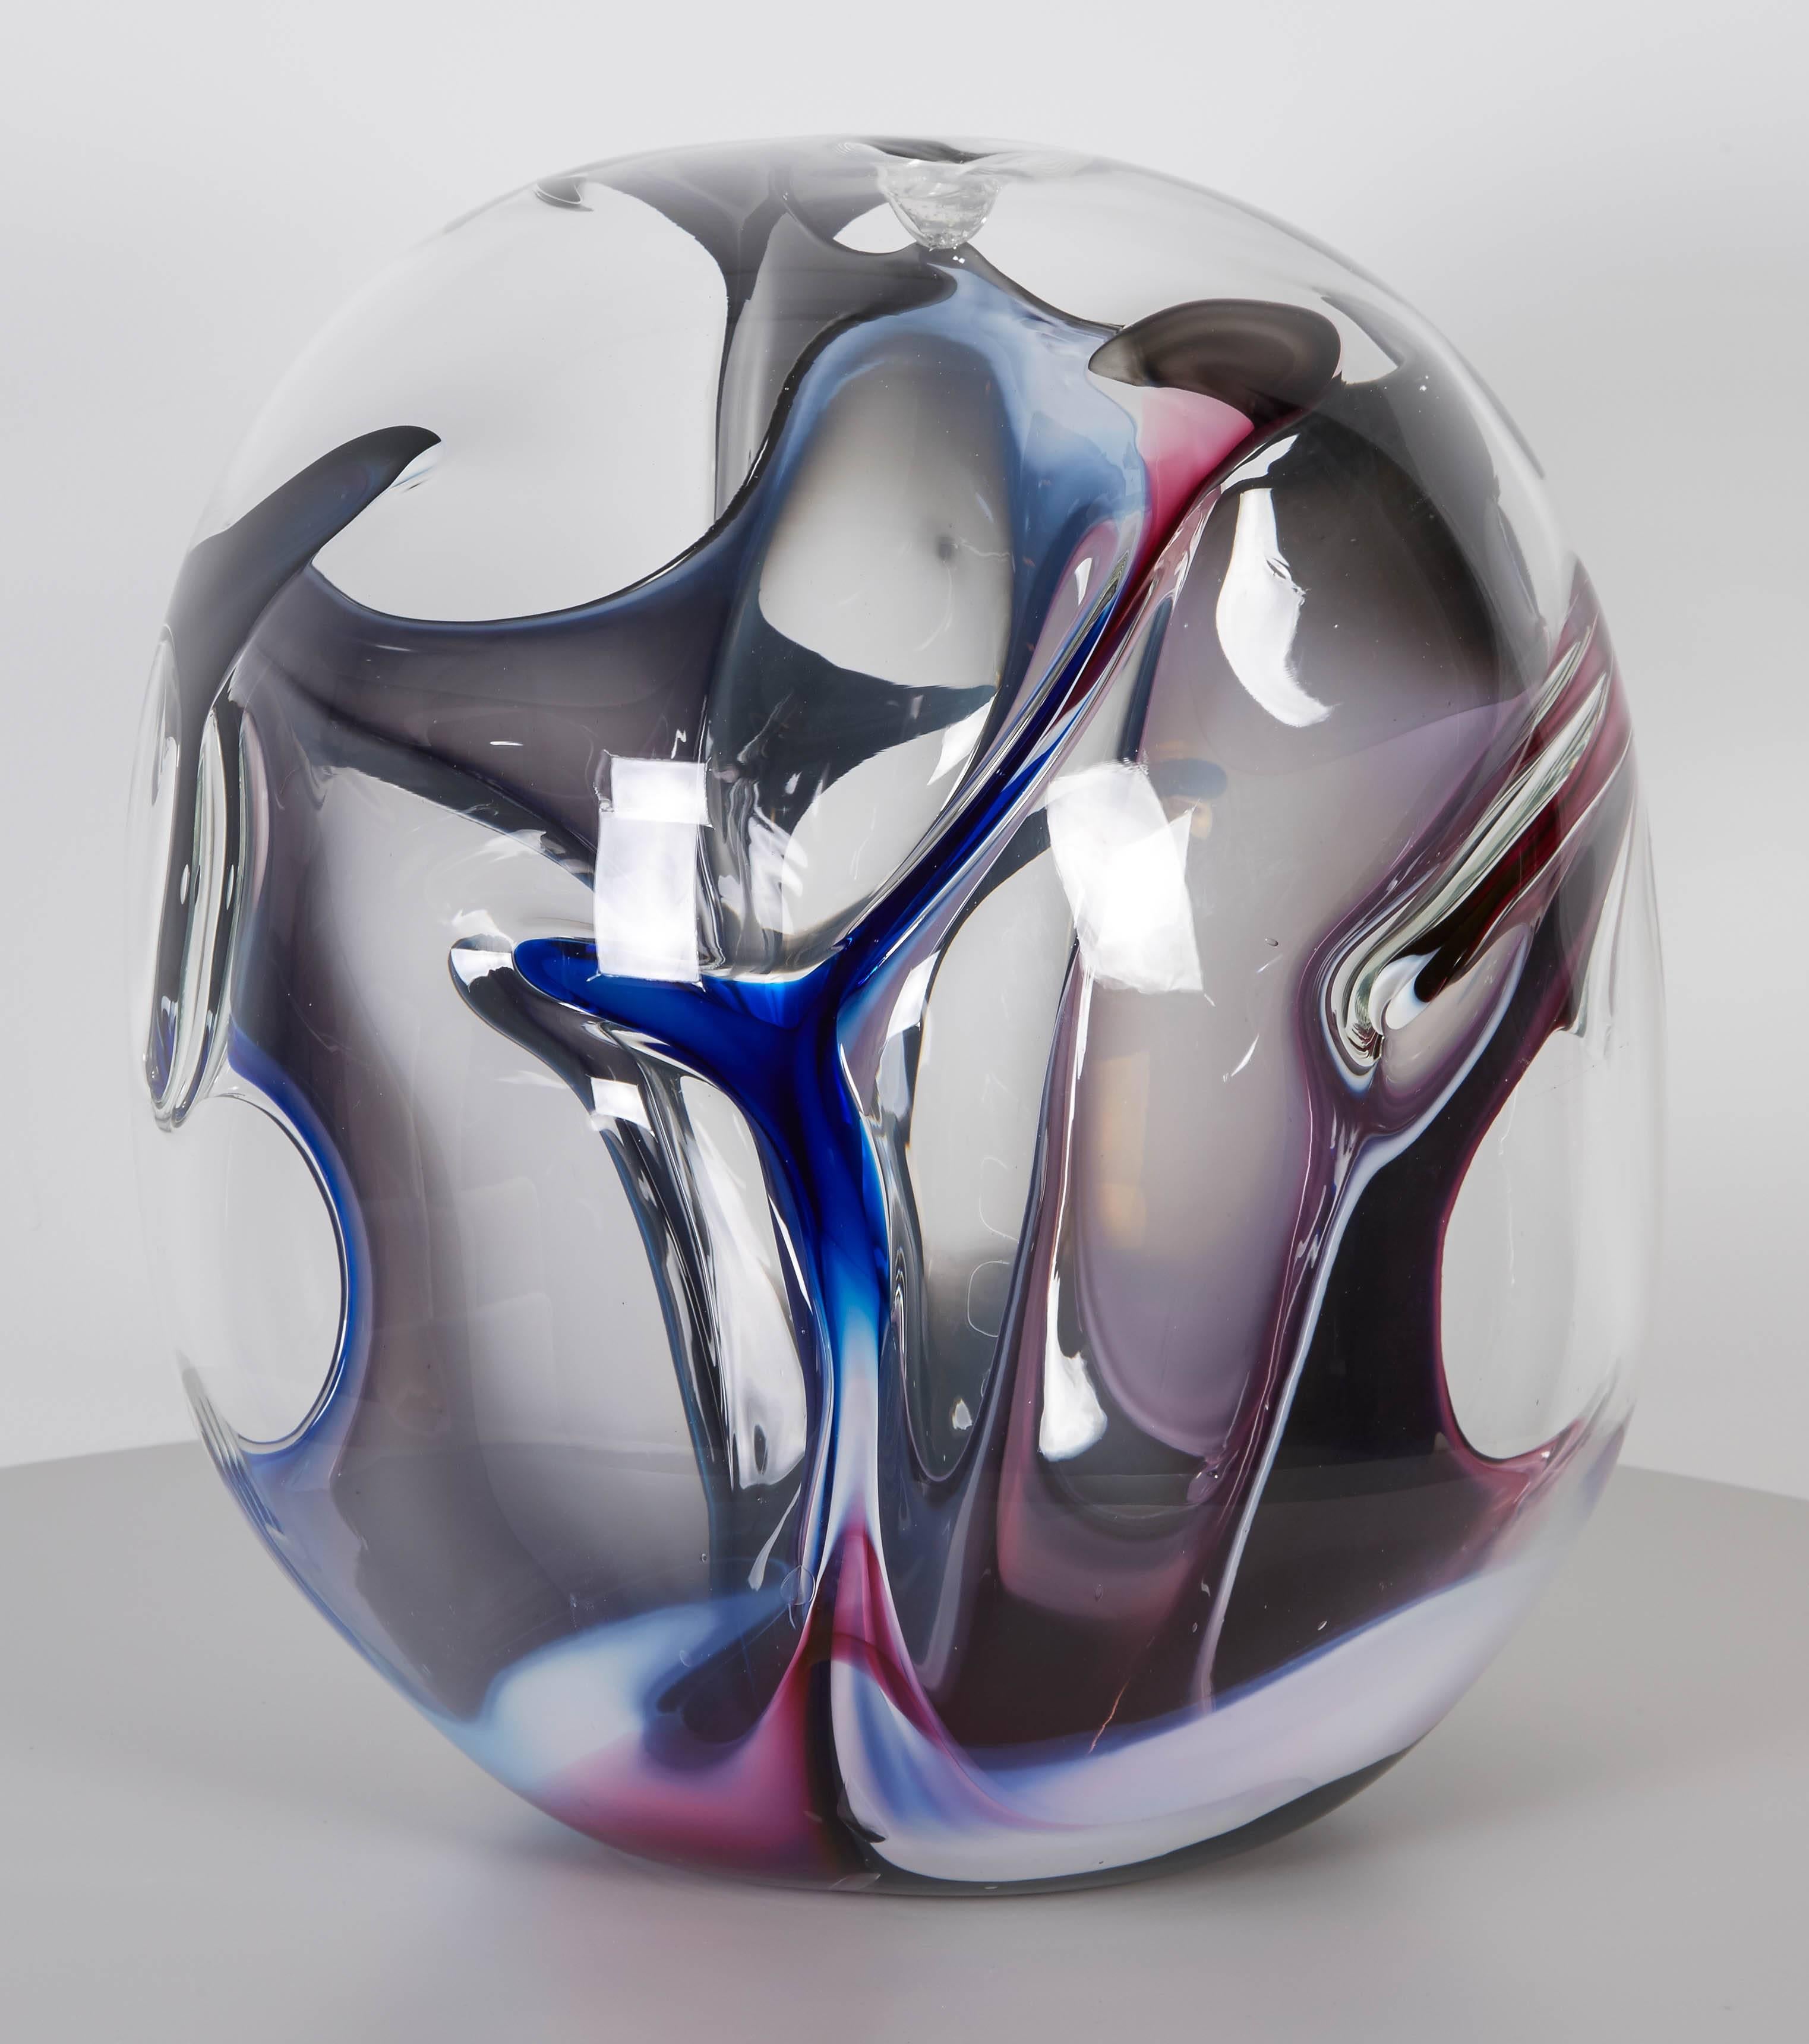 American Handblown Glass Sculpture